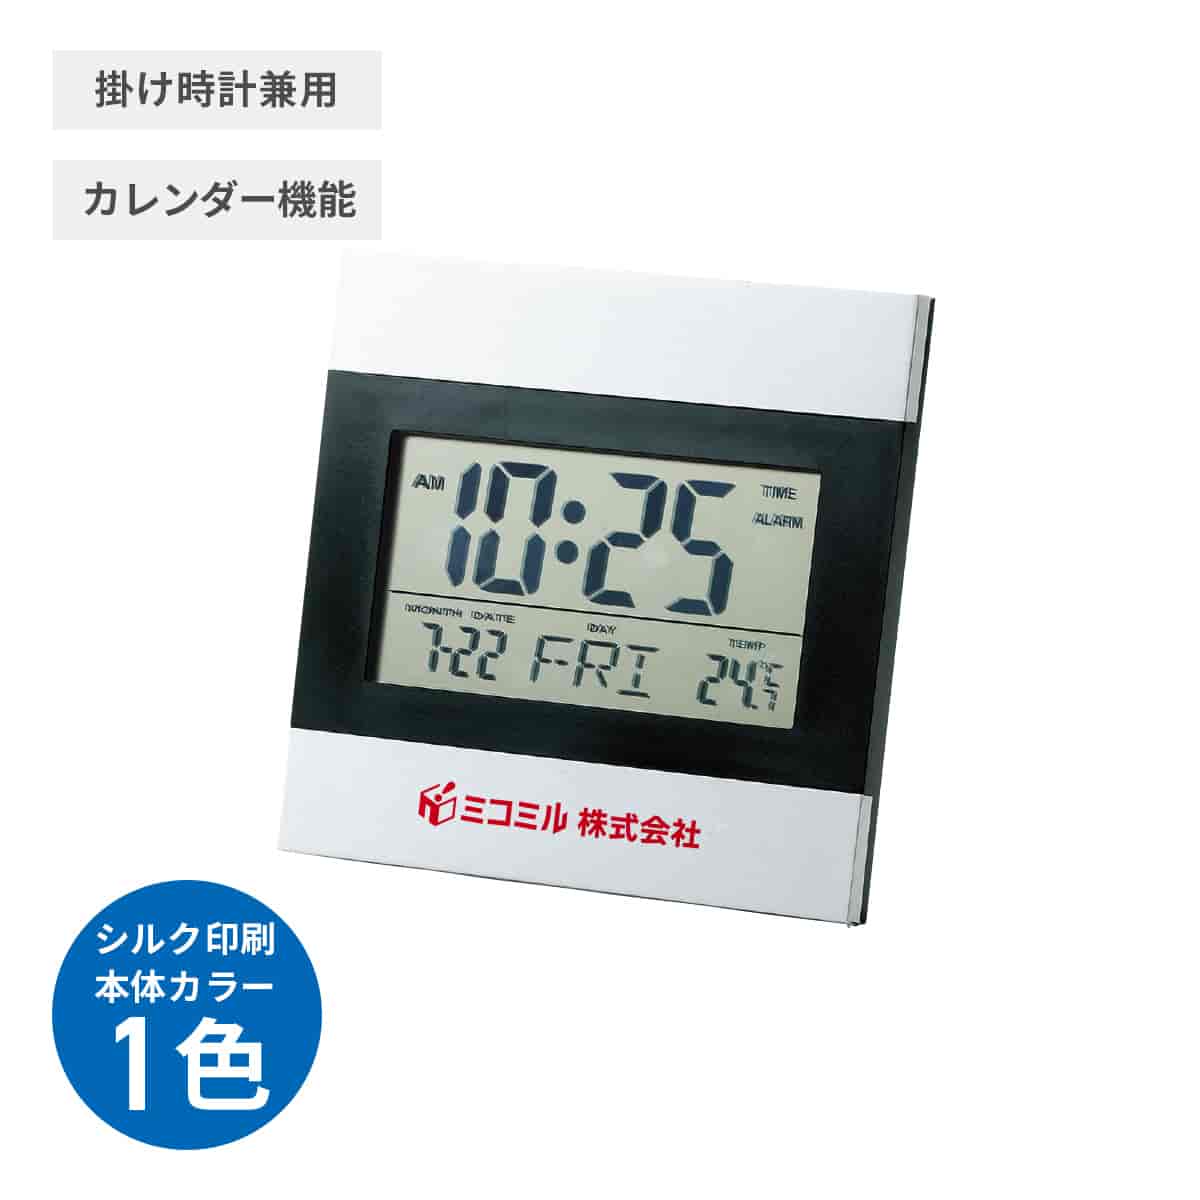 アルミフレーム インテリアクロック【オリジナル時計 / シルク印刷】 画像1